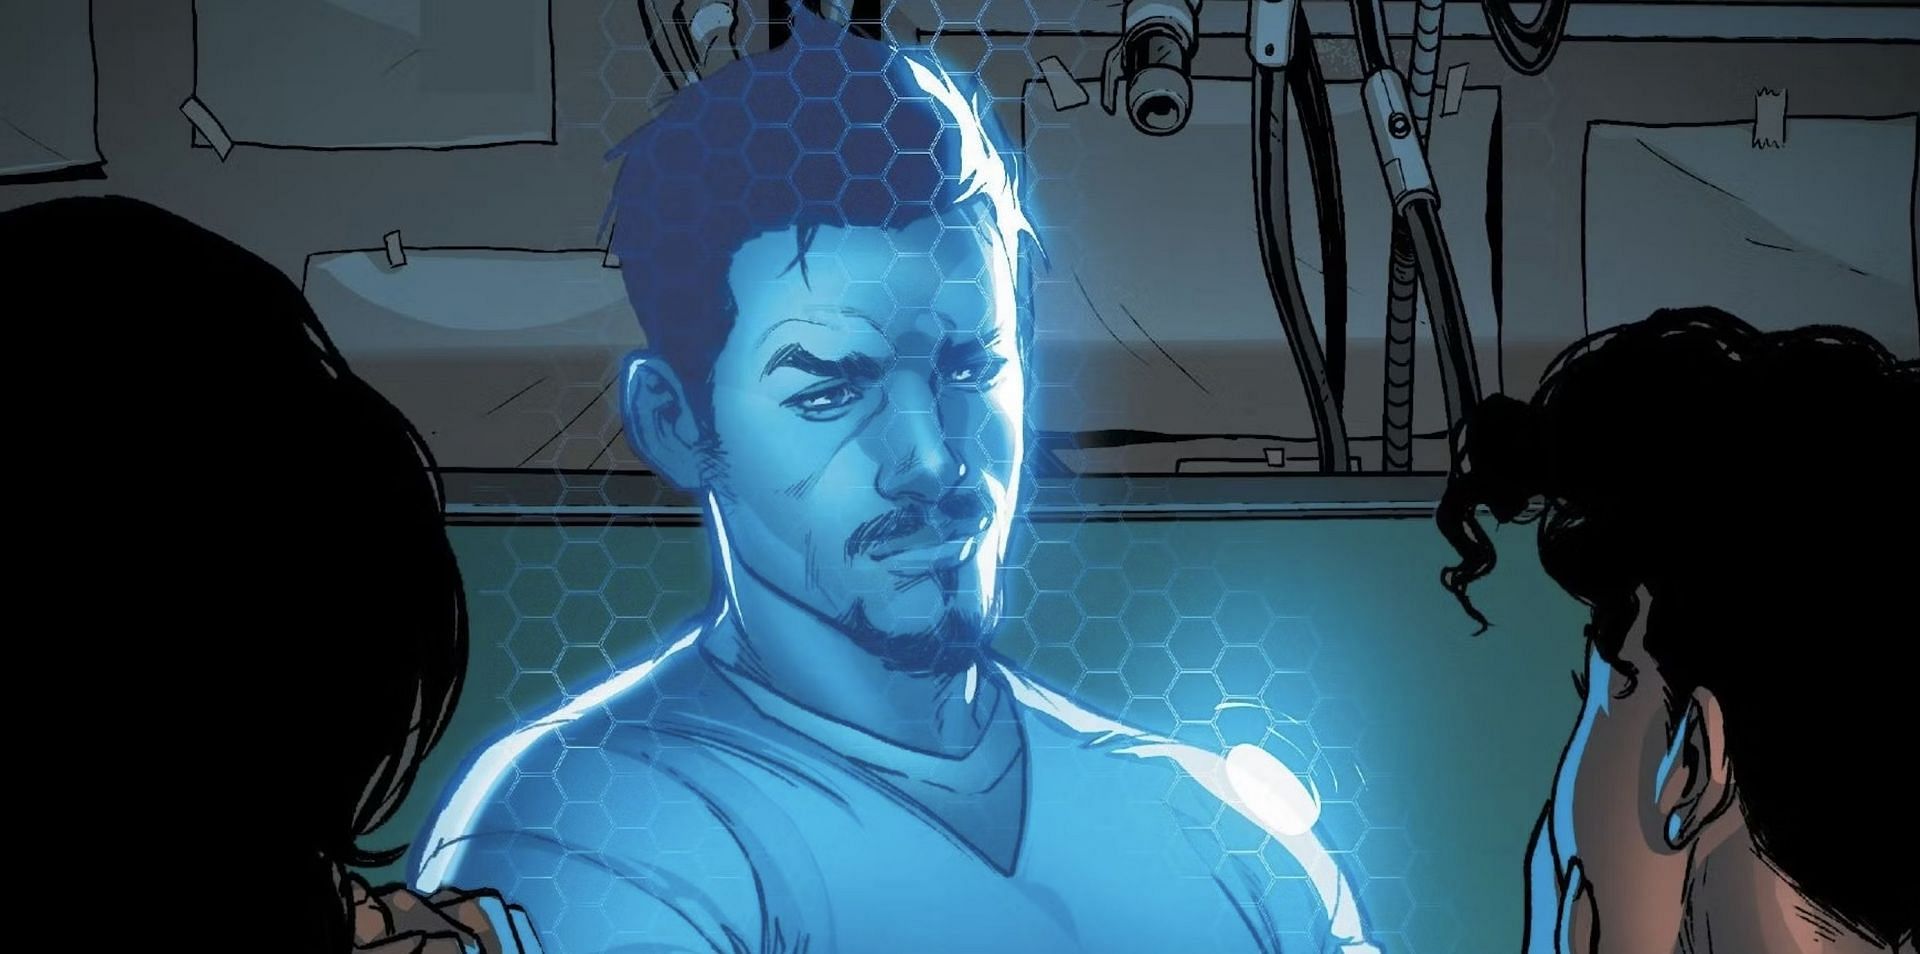 Tony Stark in the Ironheart comics (Image via Marvel Studios)